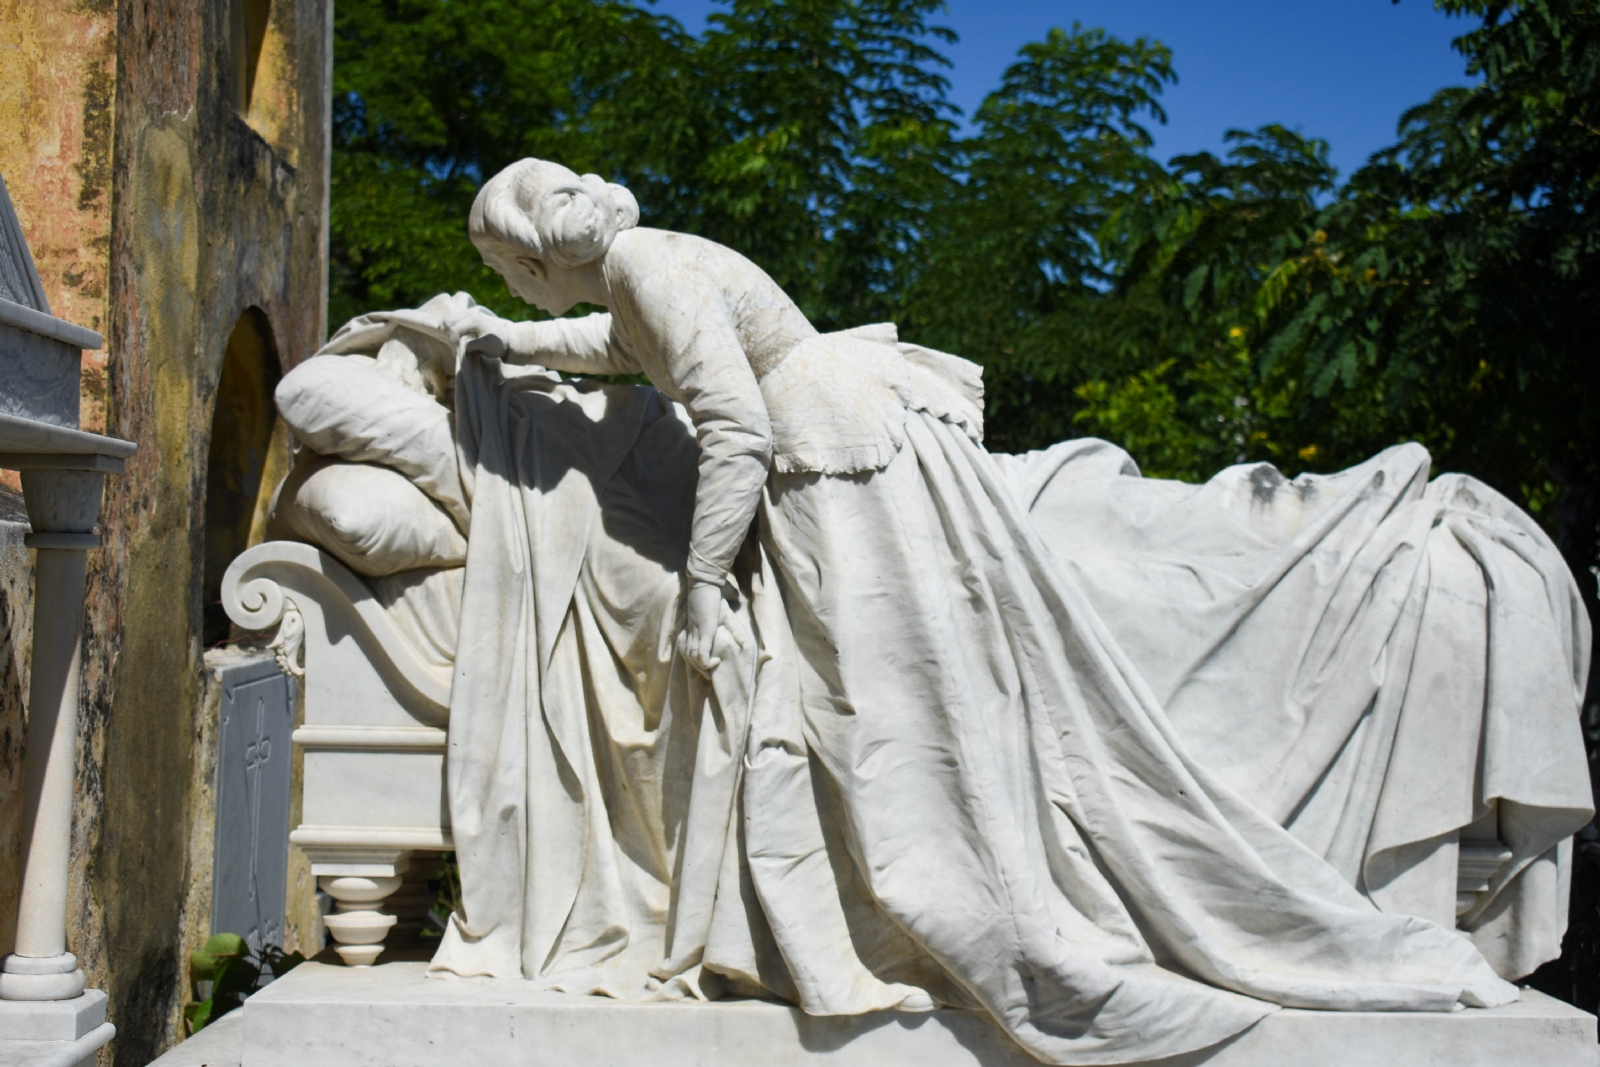 Cementerio General, un atractivo turístico de Mérida con 'arte funerario'